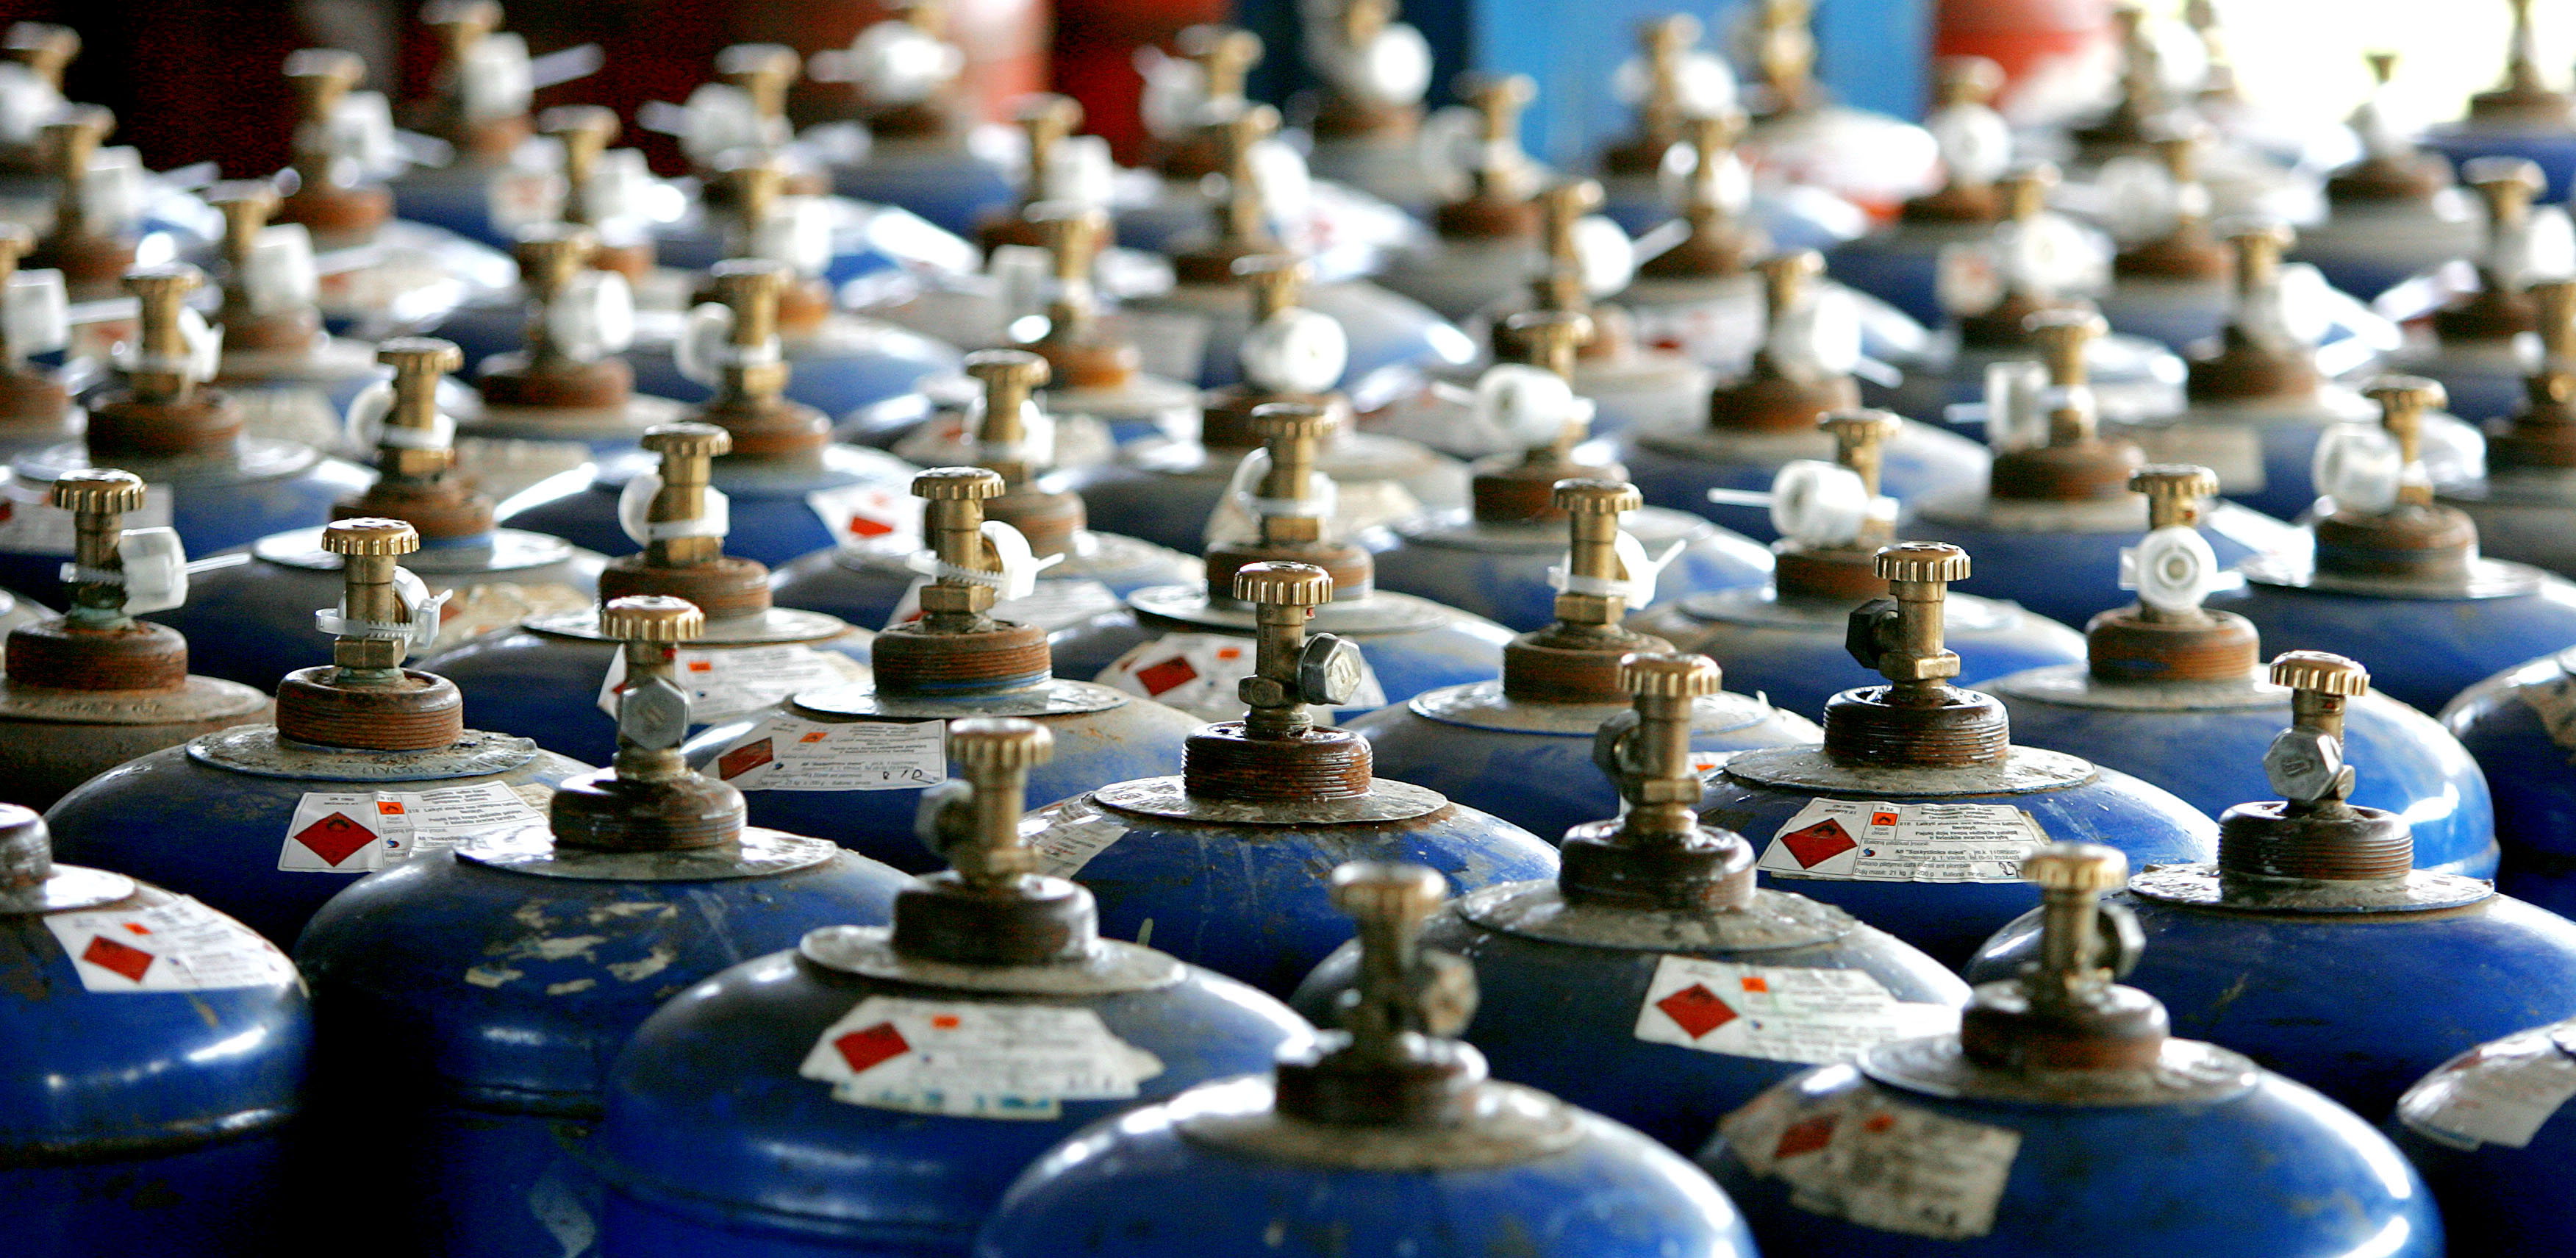 Gassflasker er ikke sen i prisrushet: han advarer om at det er risikabelt å samle dem